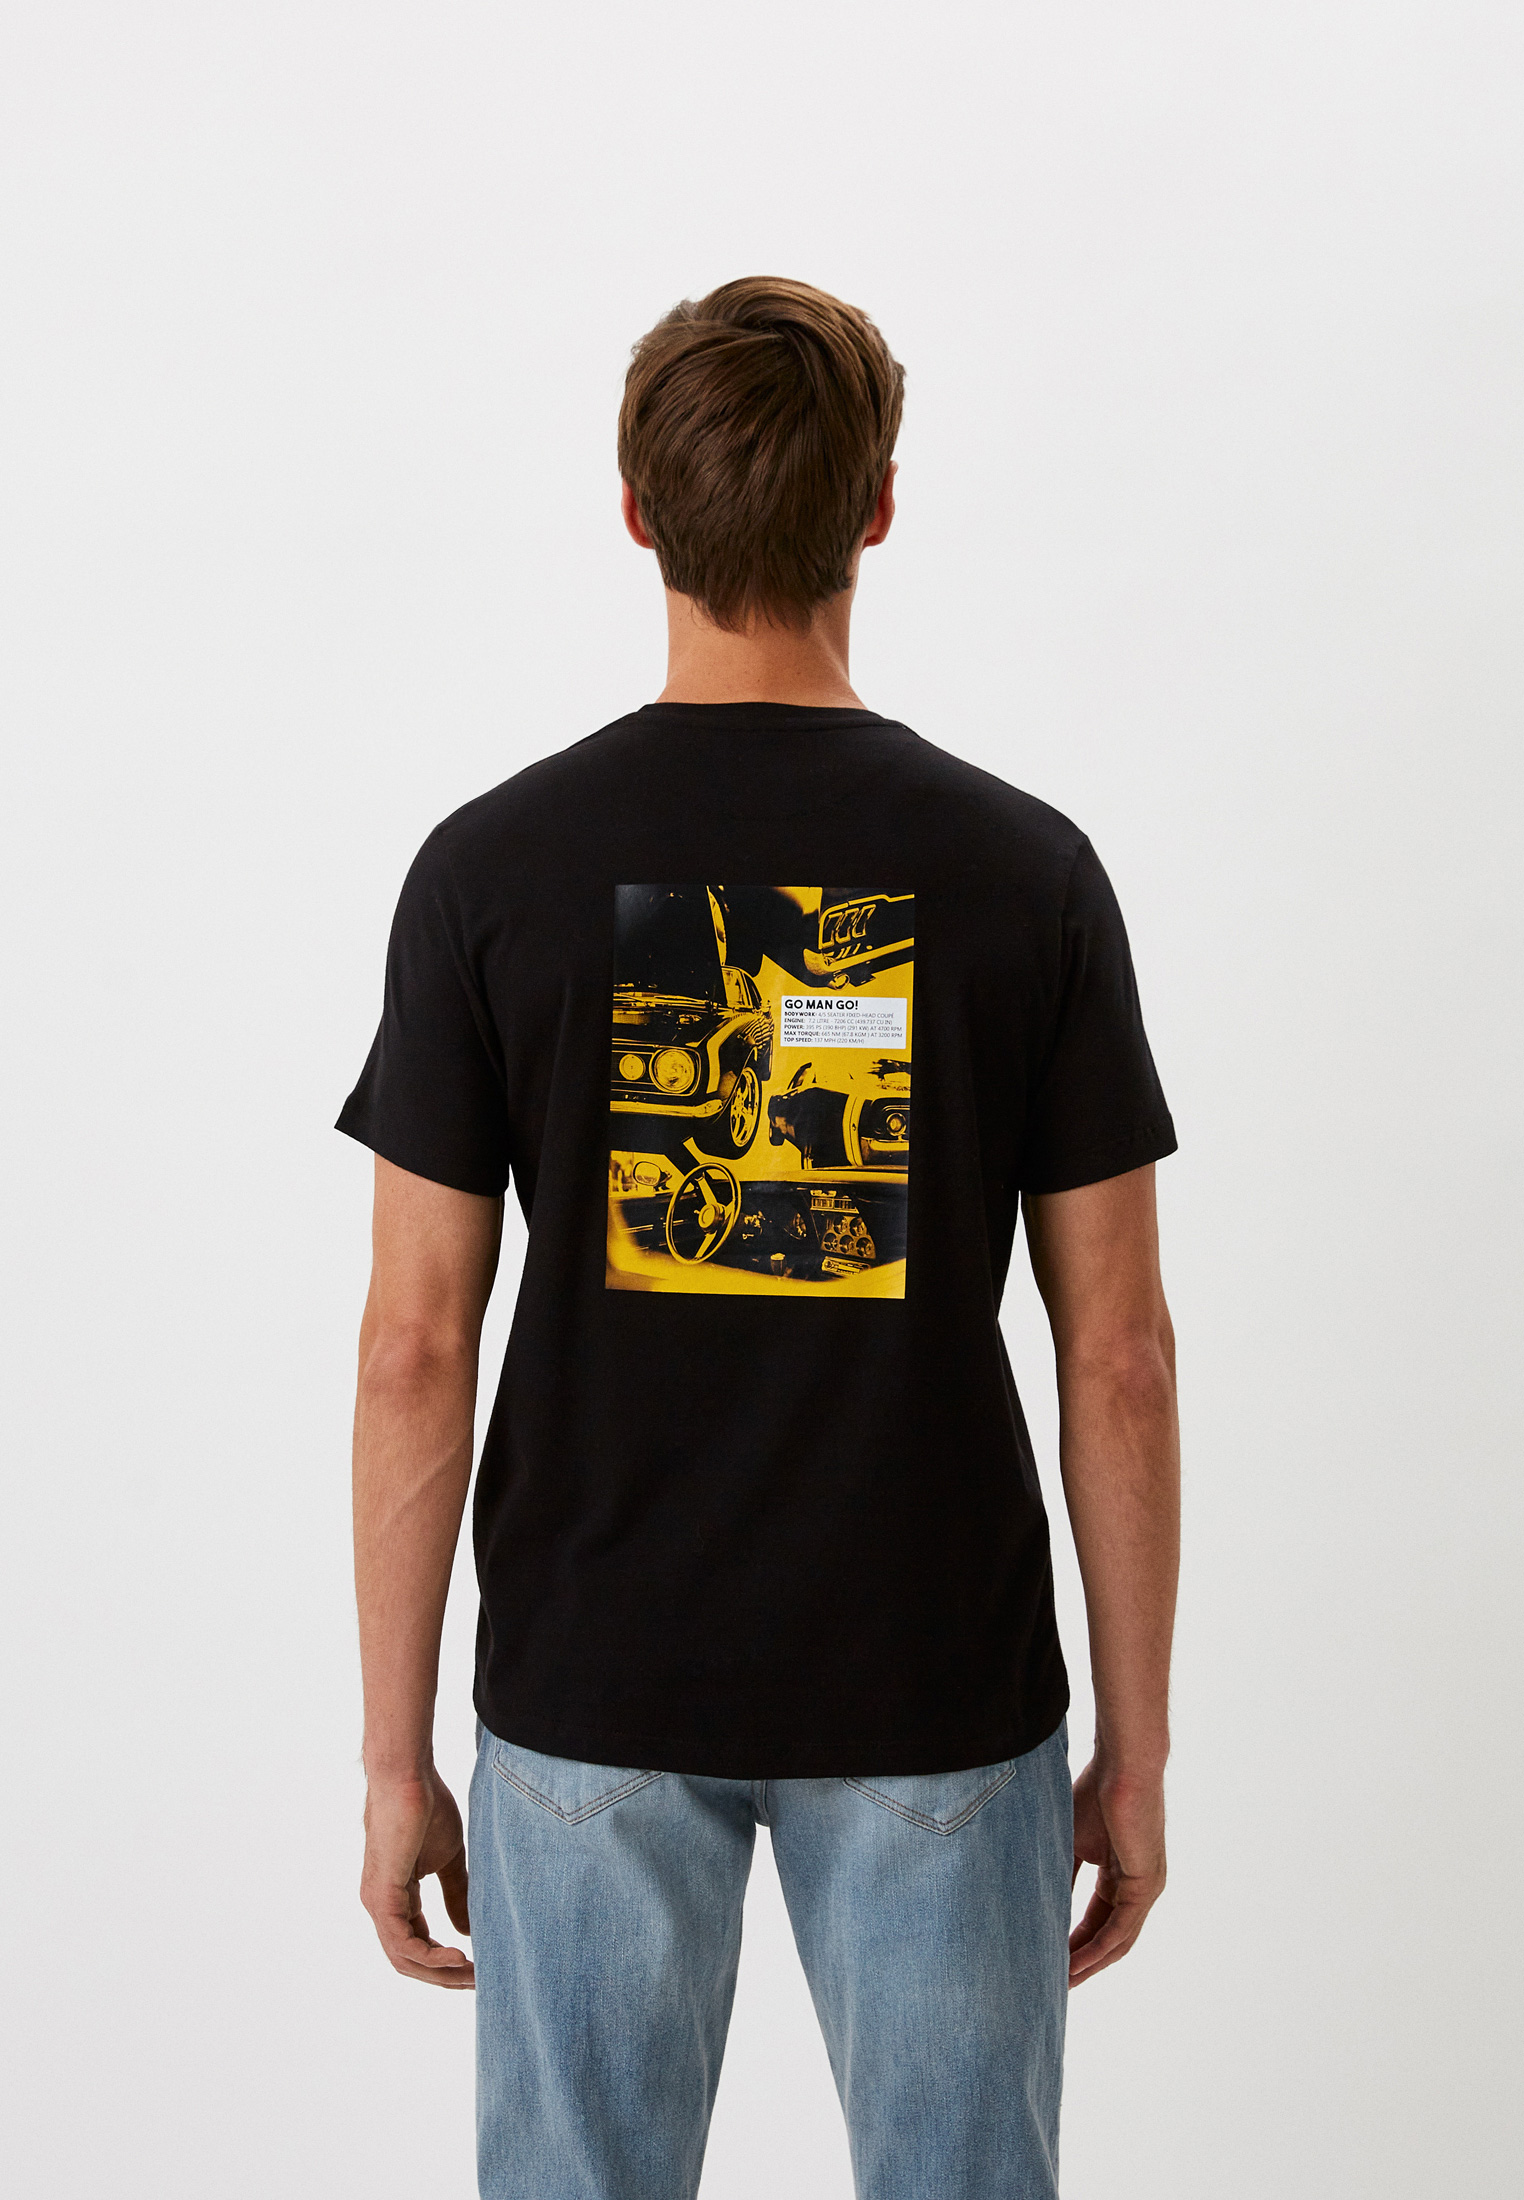 Мужская футболка Bikkembergs (Биккембергс) C 4 101 39 E 2273: изображение 3